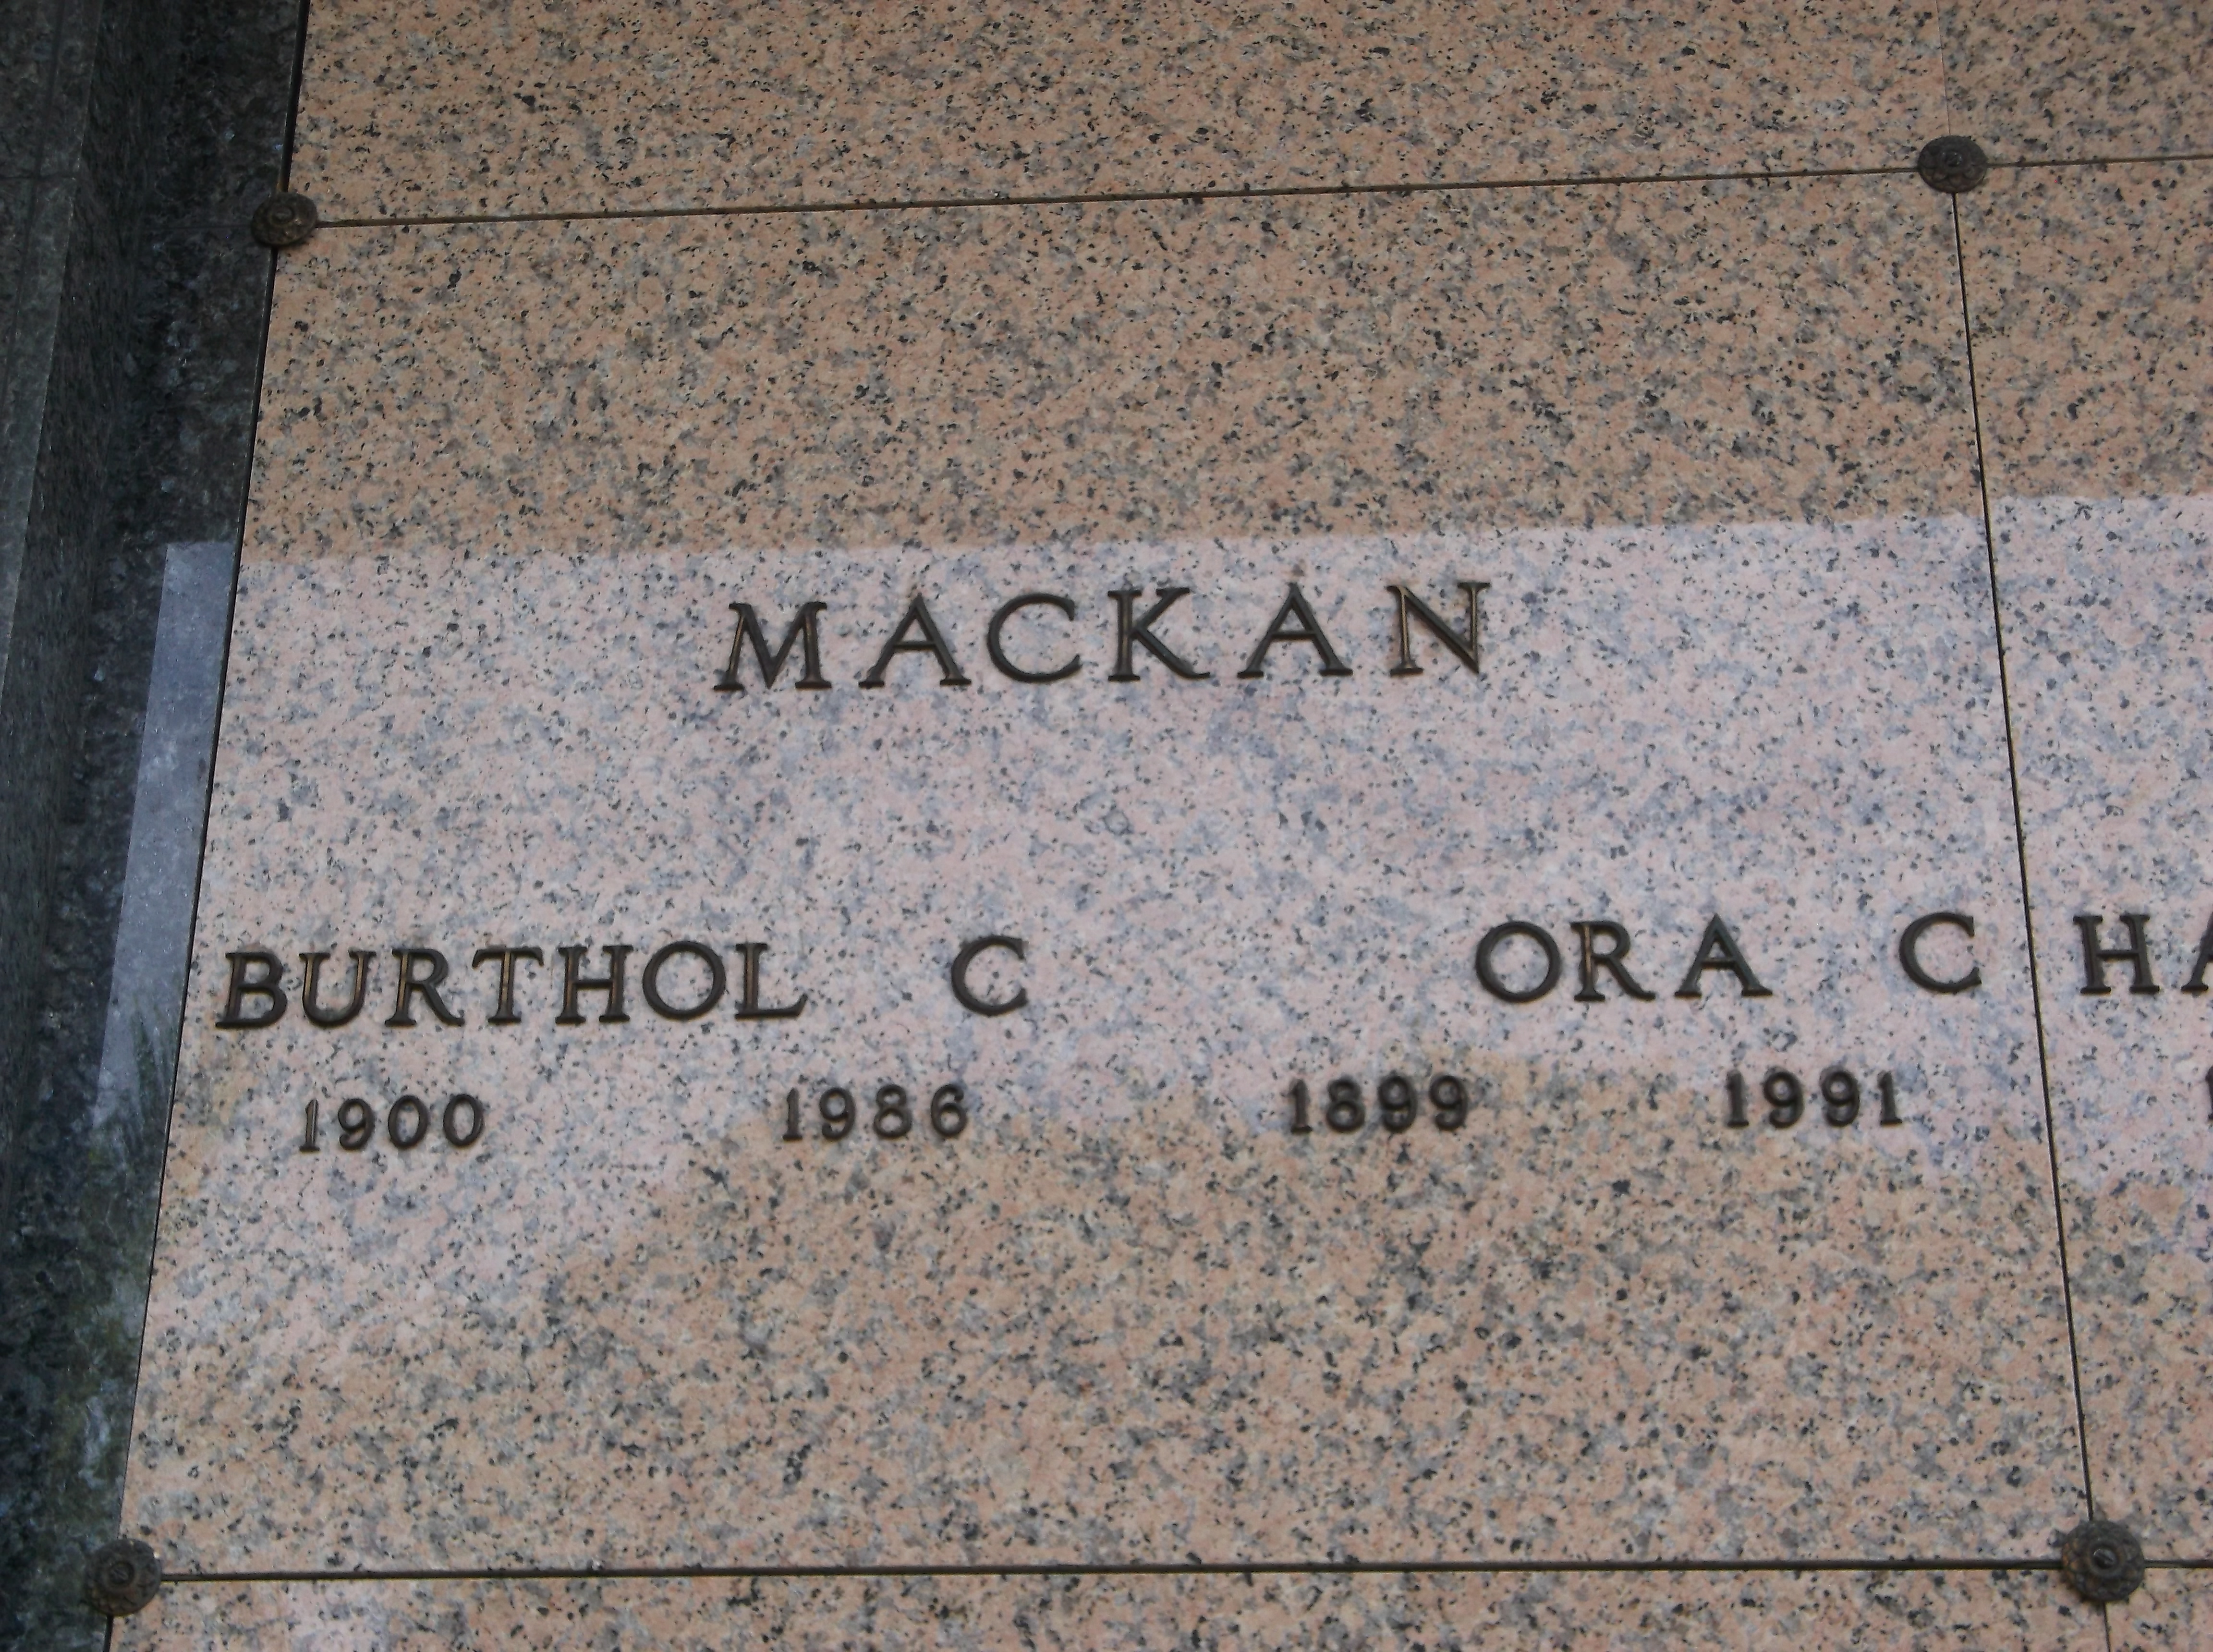 Burthol C Mackan